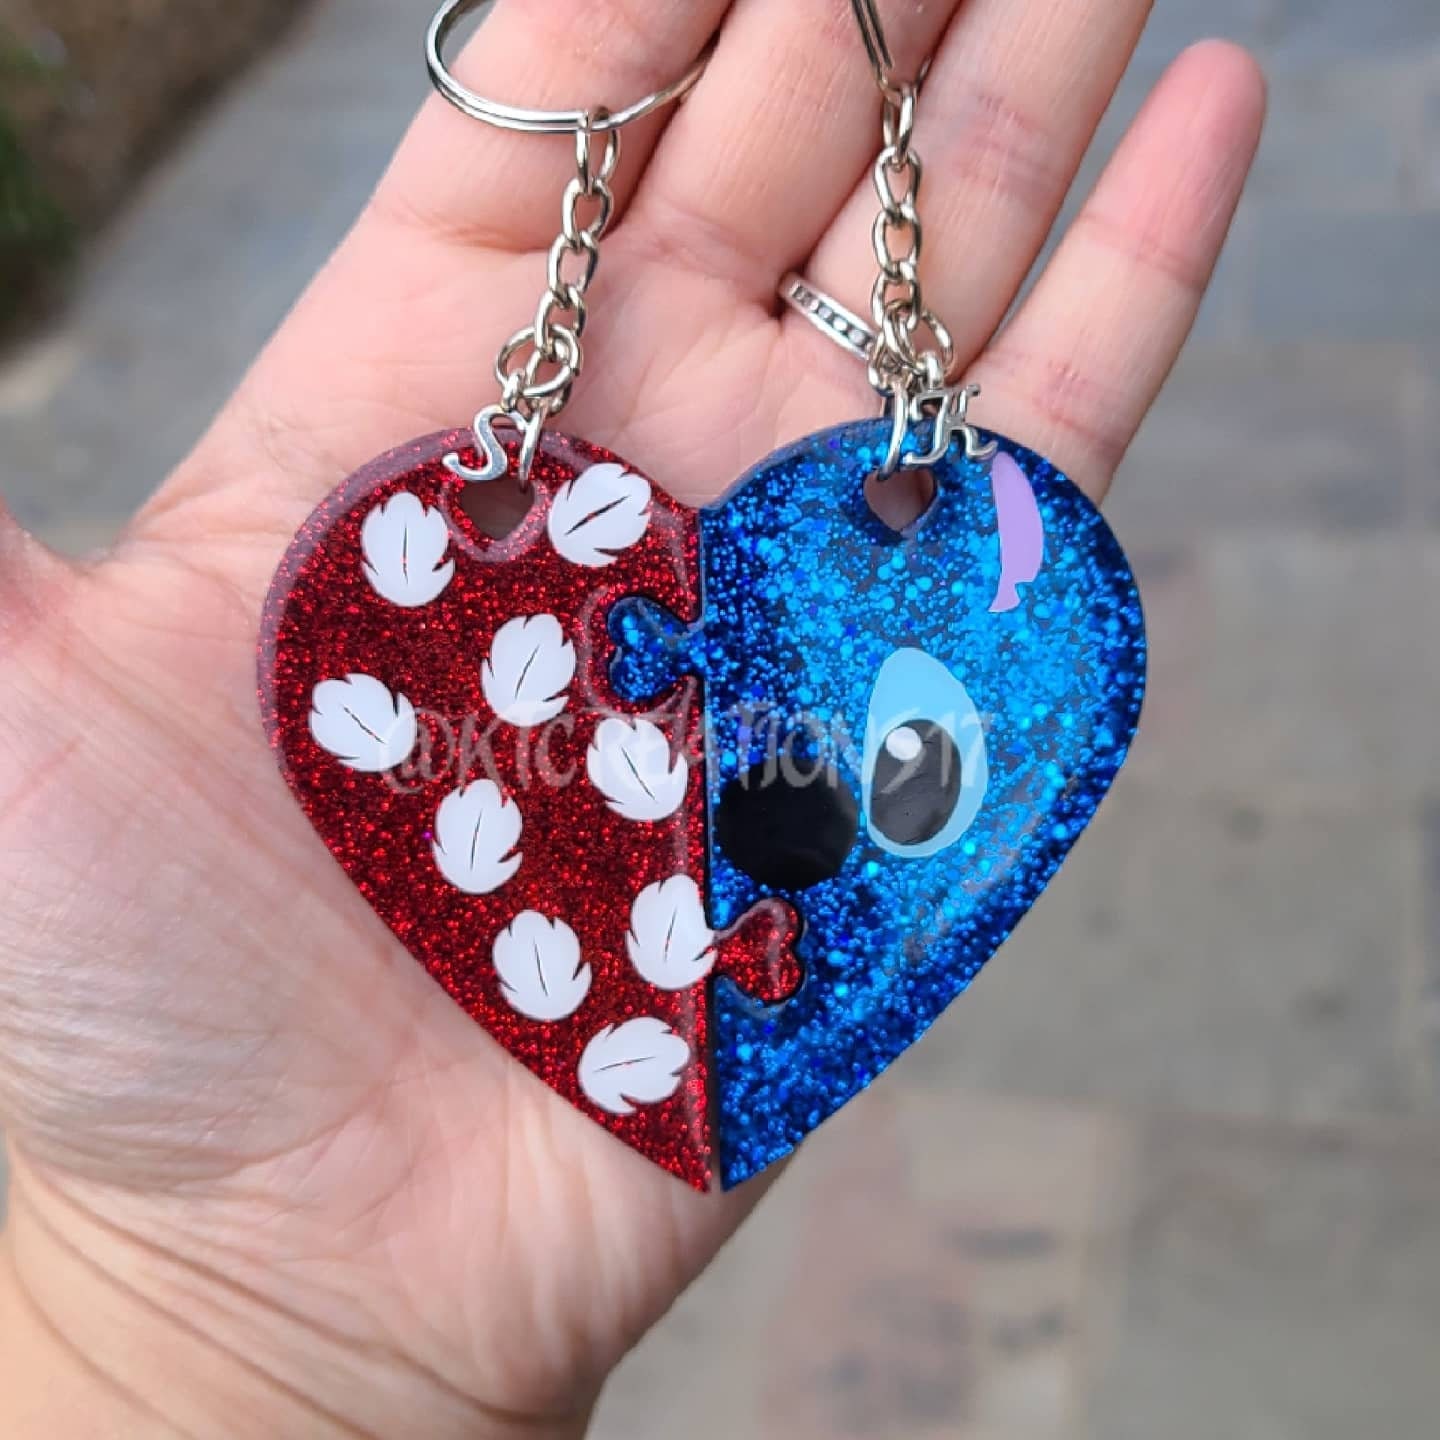 Stitch minifigure keychain - keyring geek nerd gift